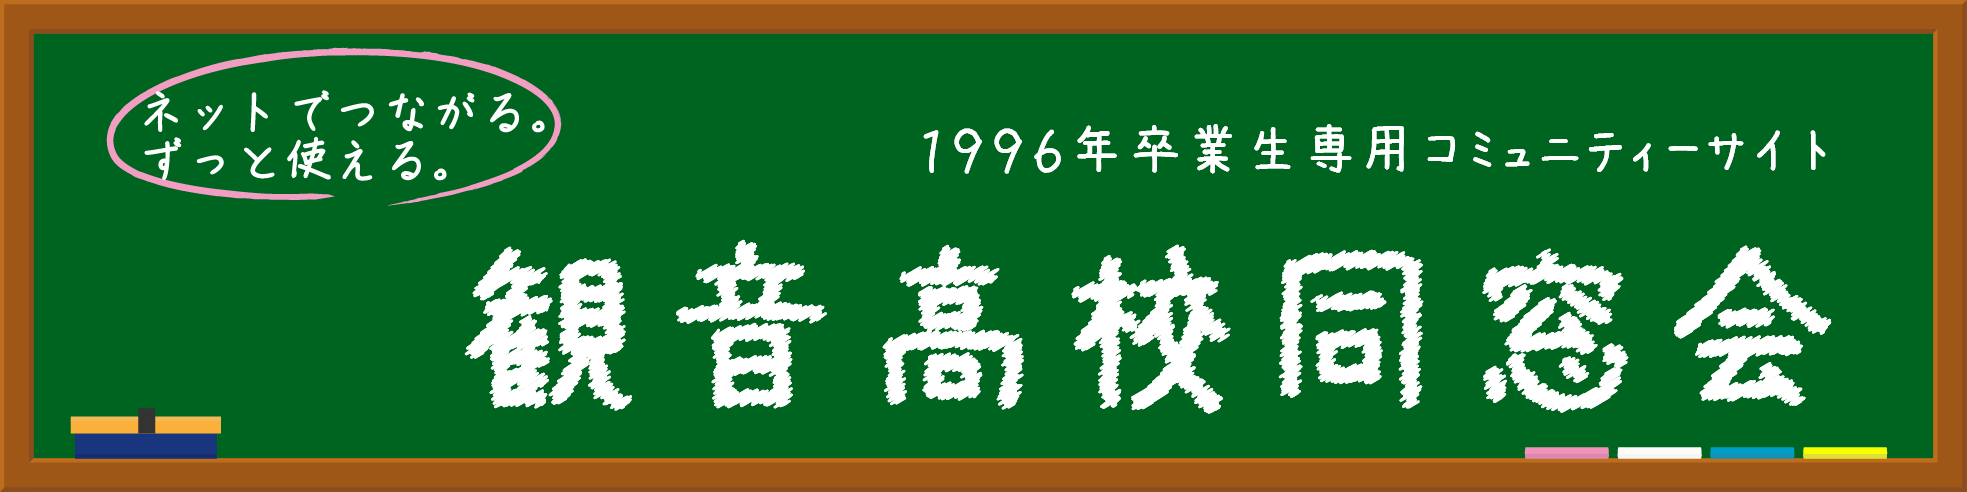 広島観音高校1996年卒業生同窓会